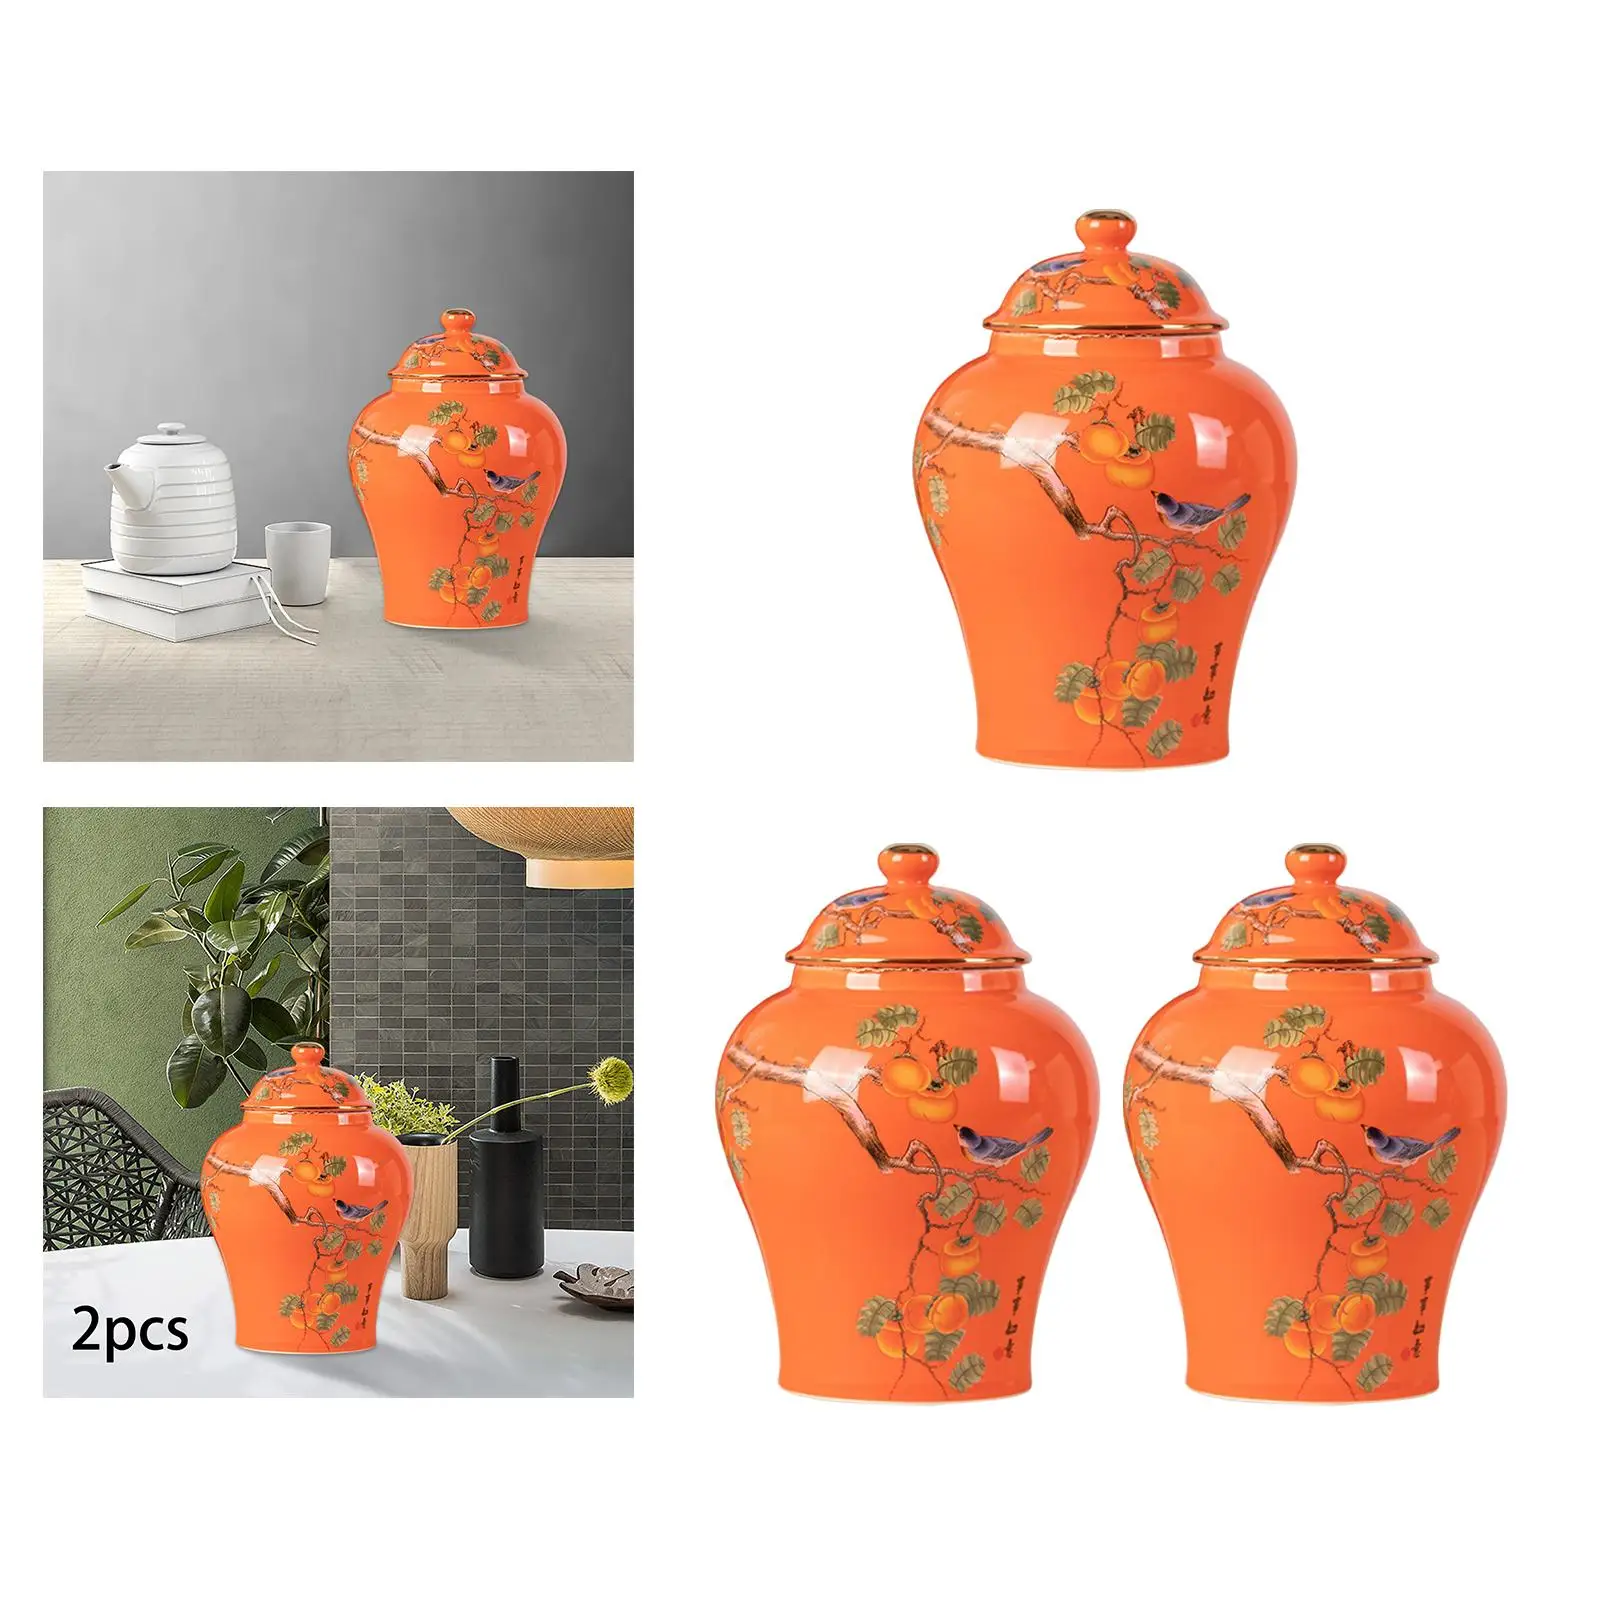 Ceramic Ginger Jars Porcelain Jar Tea Tin Decorative Temple Jars Food Jar Flower Pot Flower Vase for Home Bedroom Office Decor